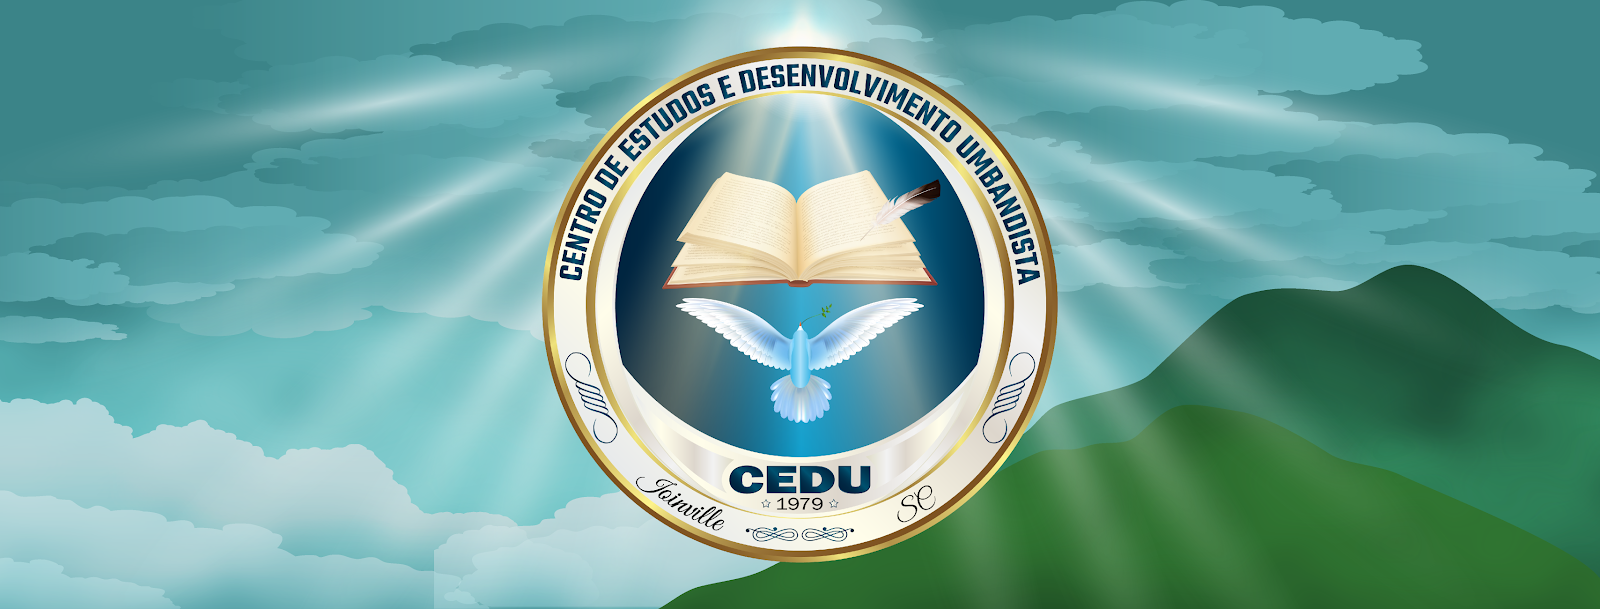 CEDU - Centro de Estudos e Desenvolvimento Umbandista